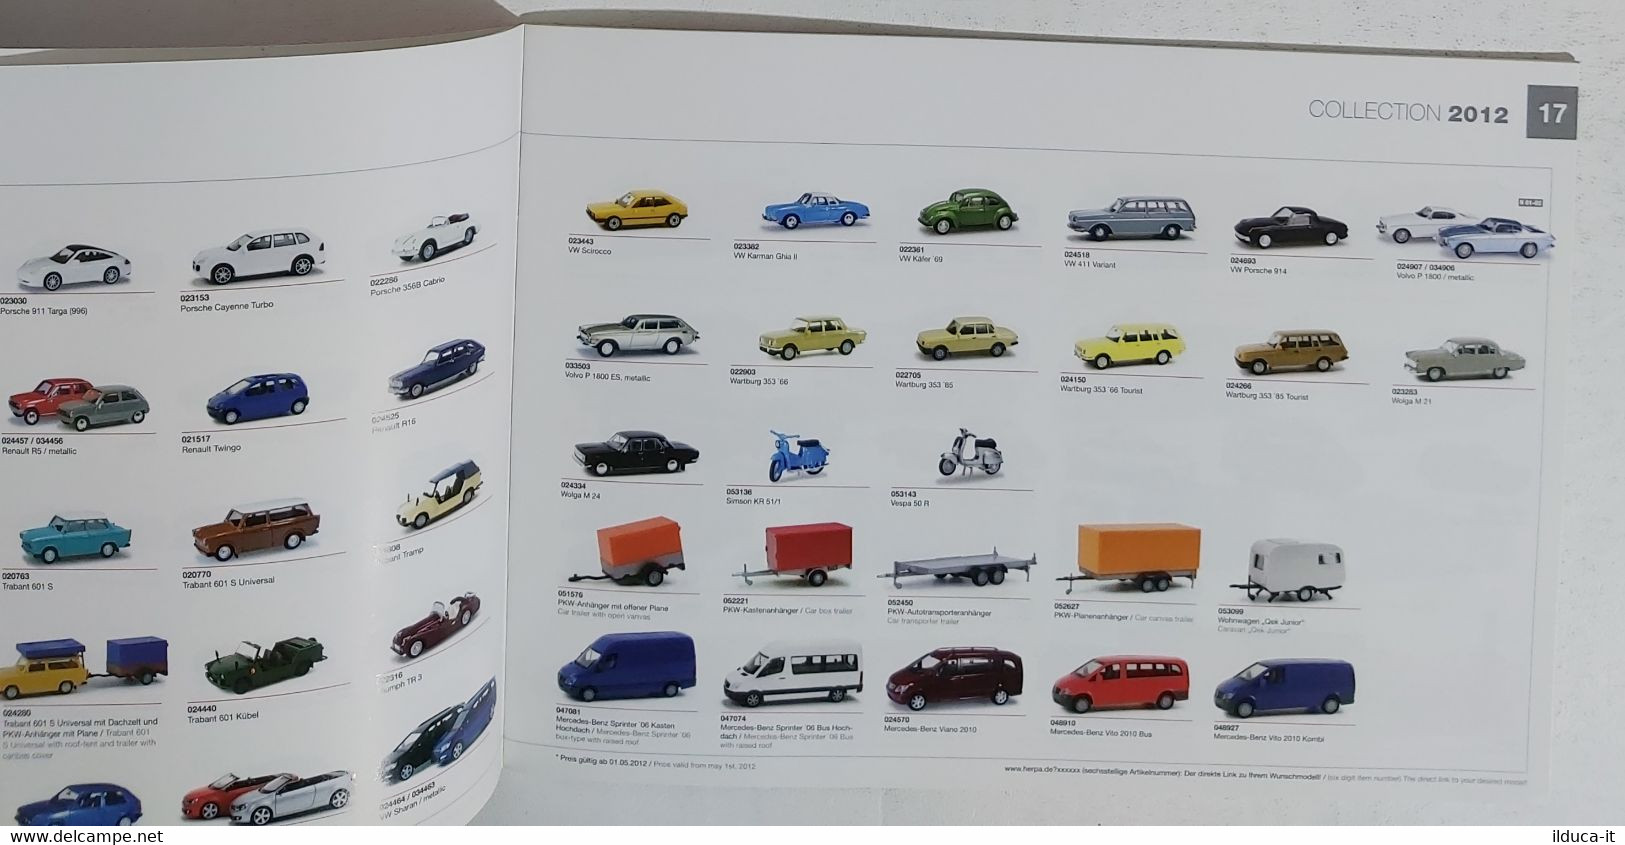 72466 CATALOGO Modellismo HERPA - Cars & Trucks 05-06 & Collection 2012 - Italia